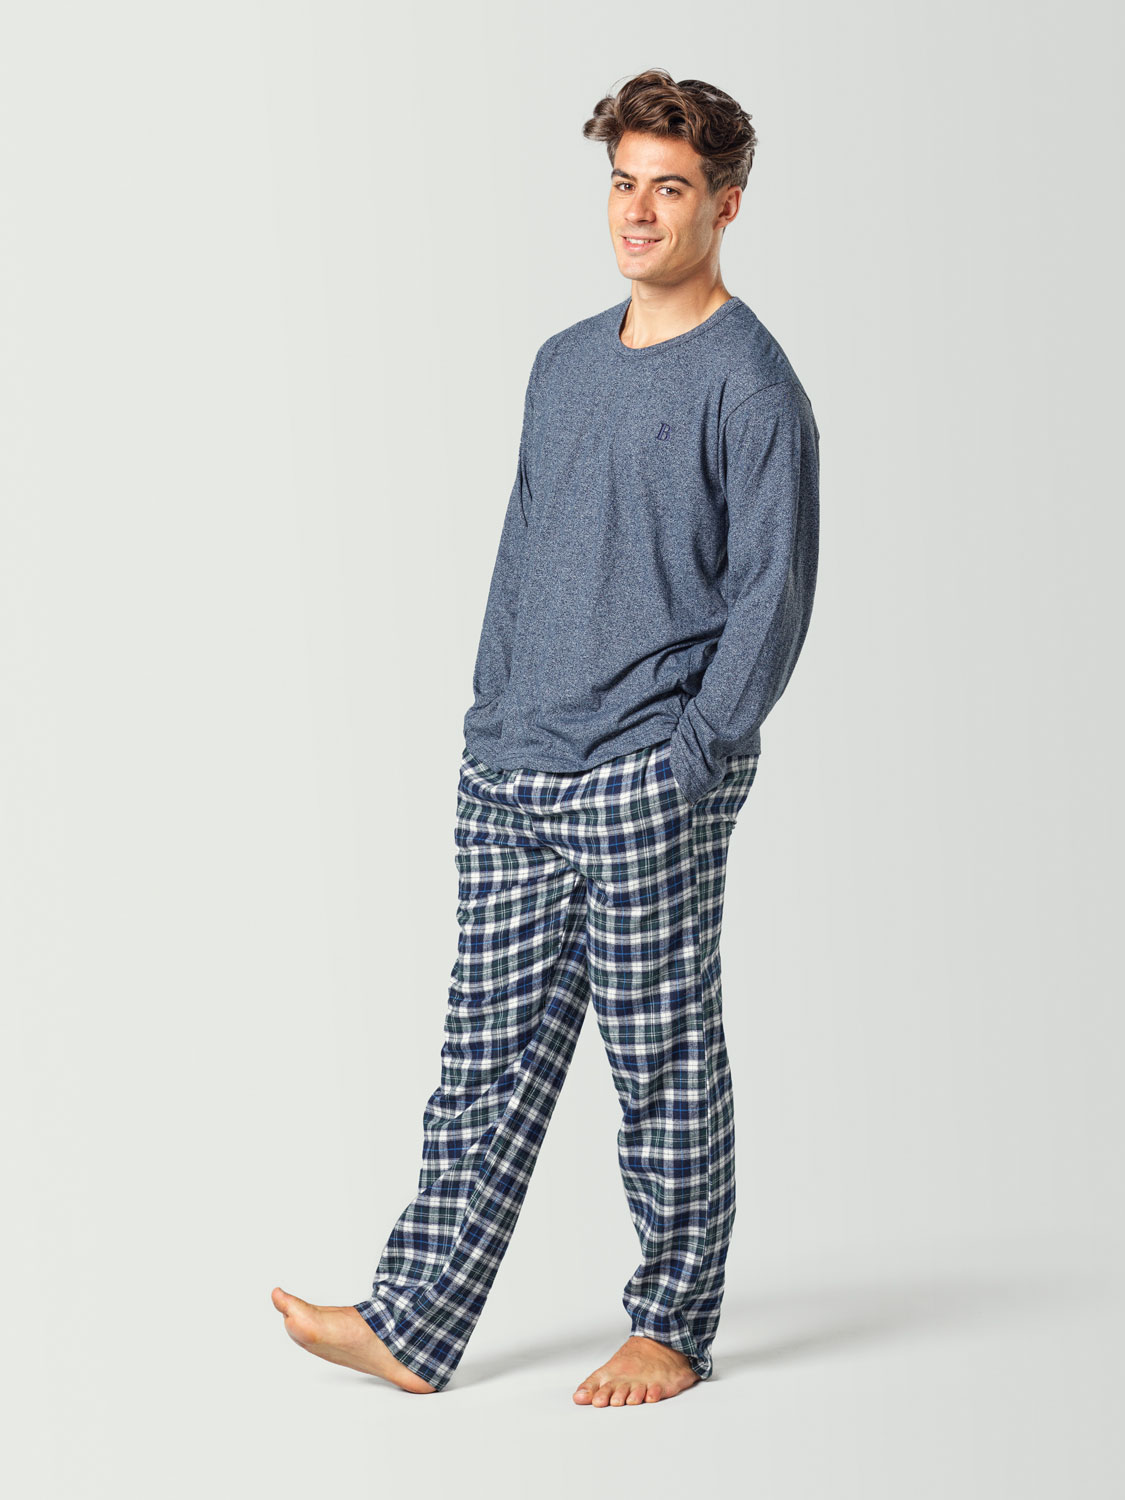 Pijama para hombre con camiseta de manga larga azul y pantalón a cuadros azul y blanco